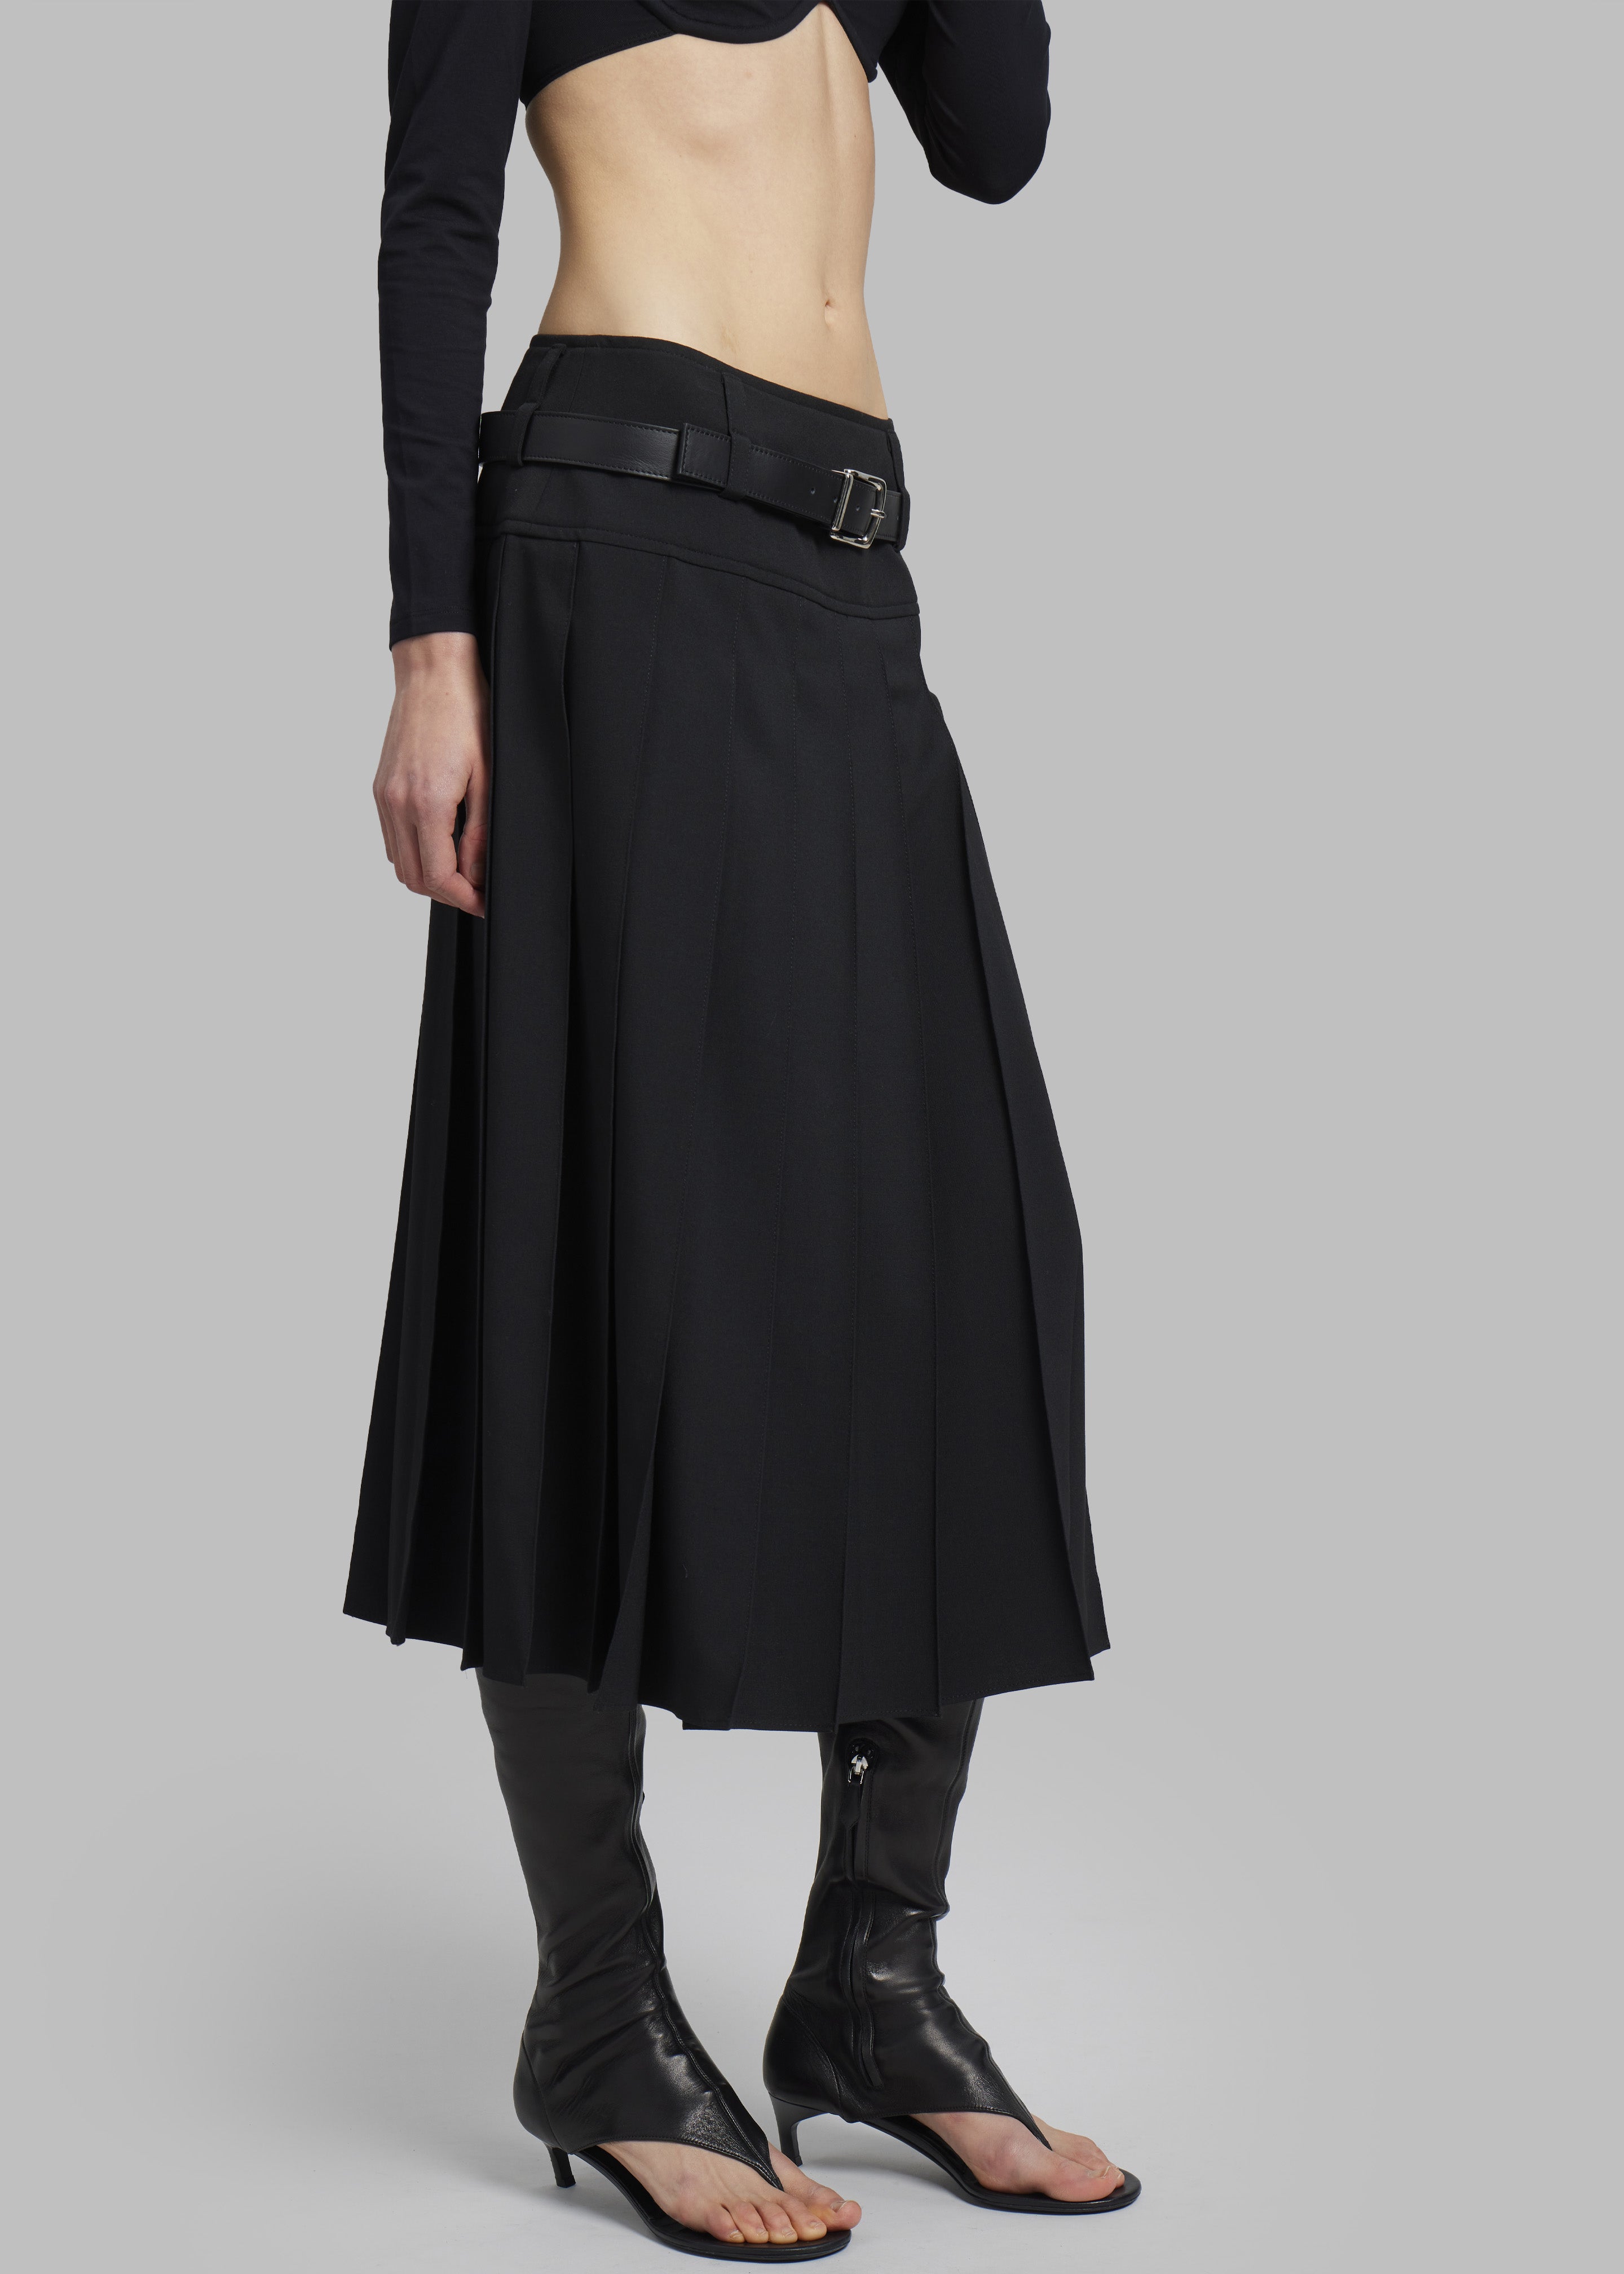 Beaufille Devi Skirt - Black - 3